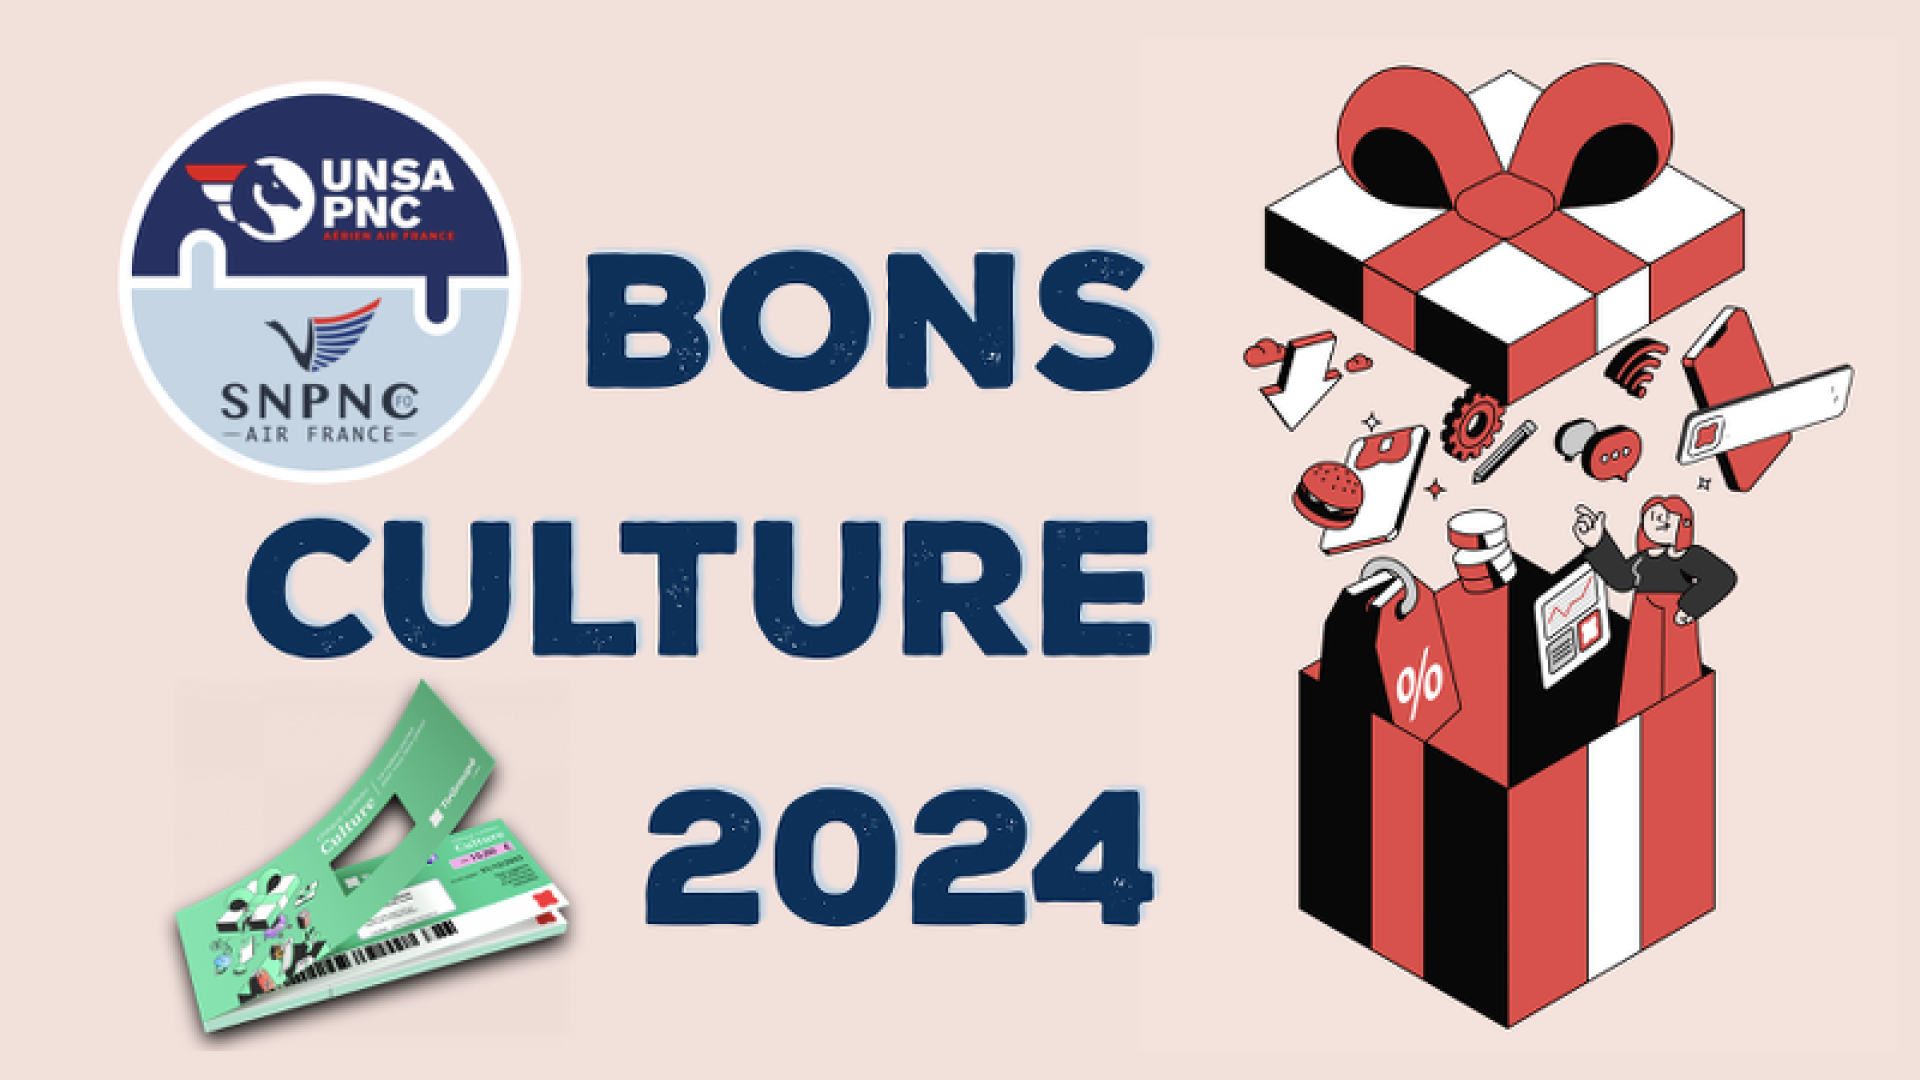 bons culture 2024